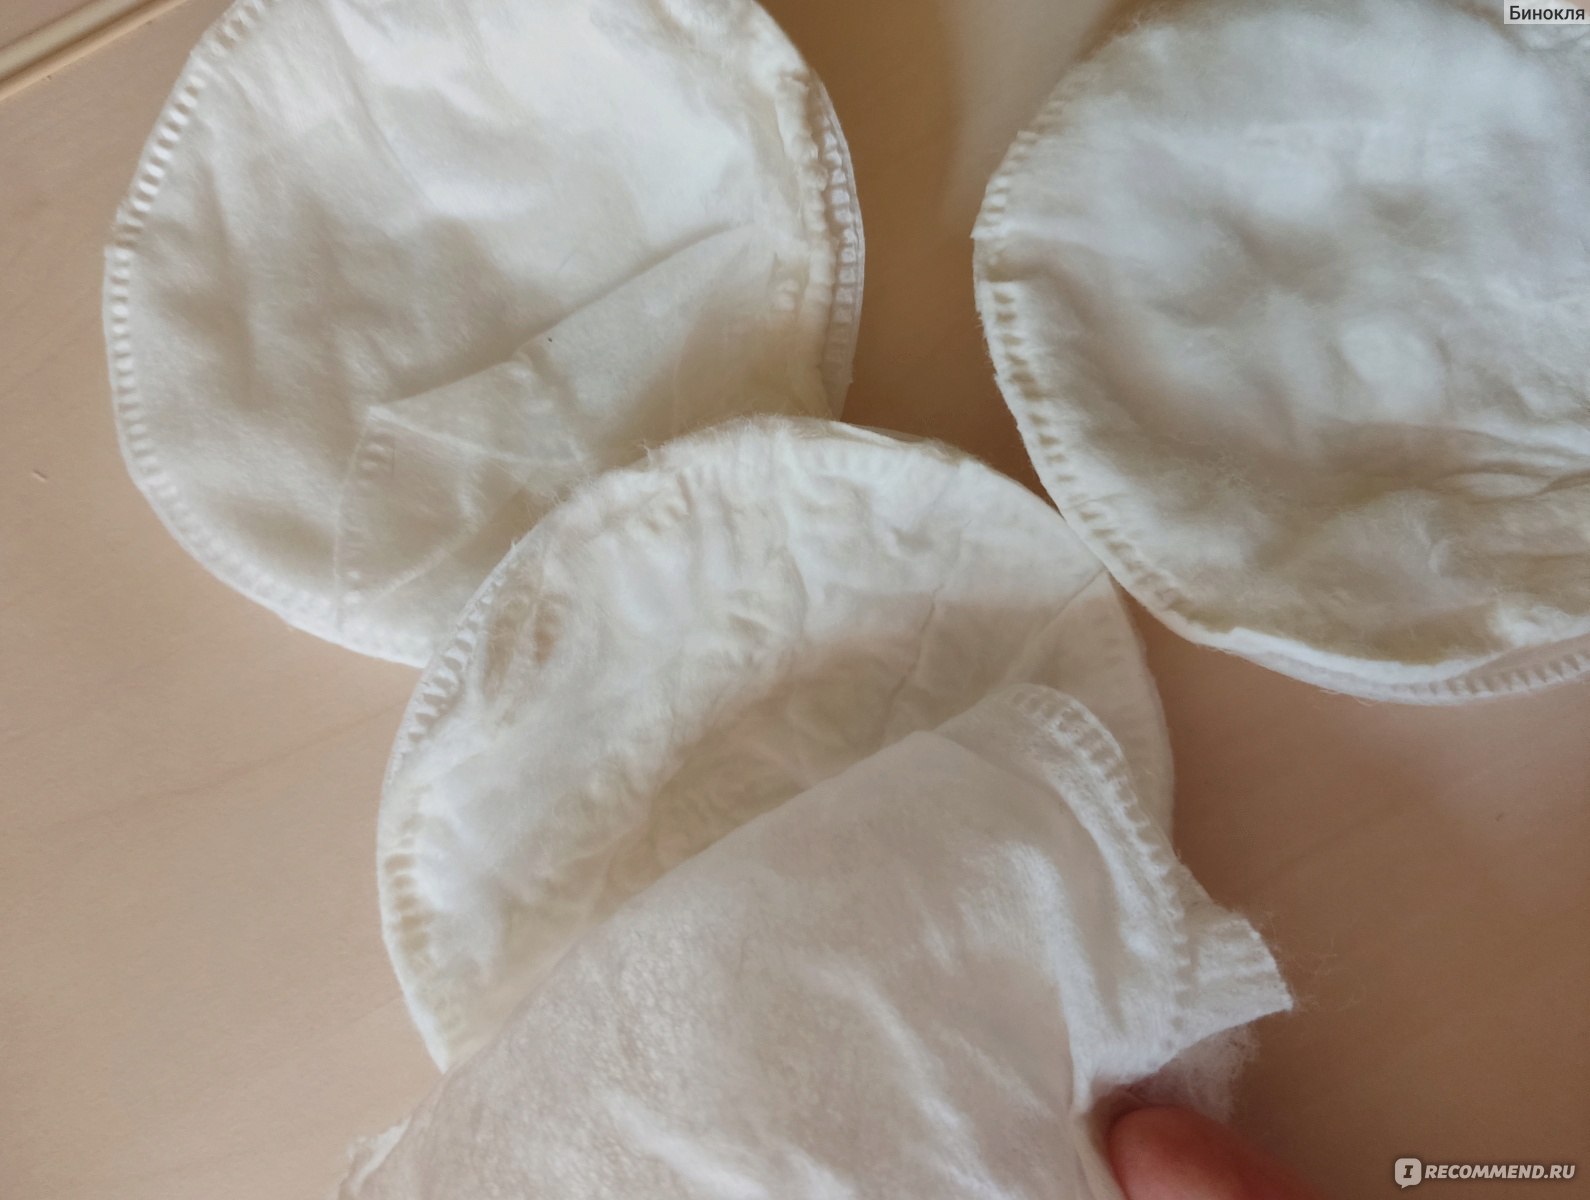 Прокладки для груди Фармком Анна Вкладыши бюстгальтерные для кормящих матерей, 30 шт фото